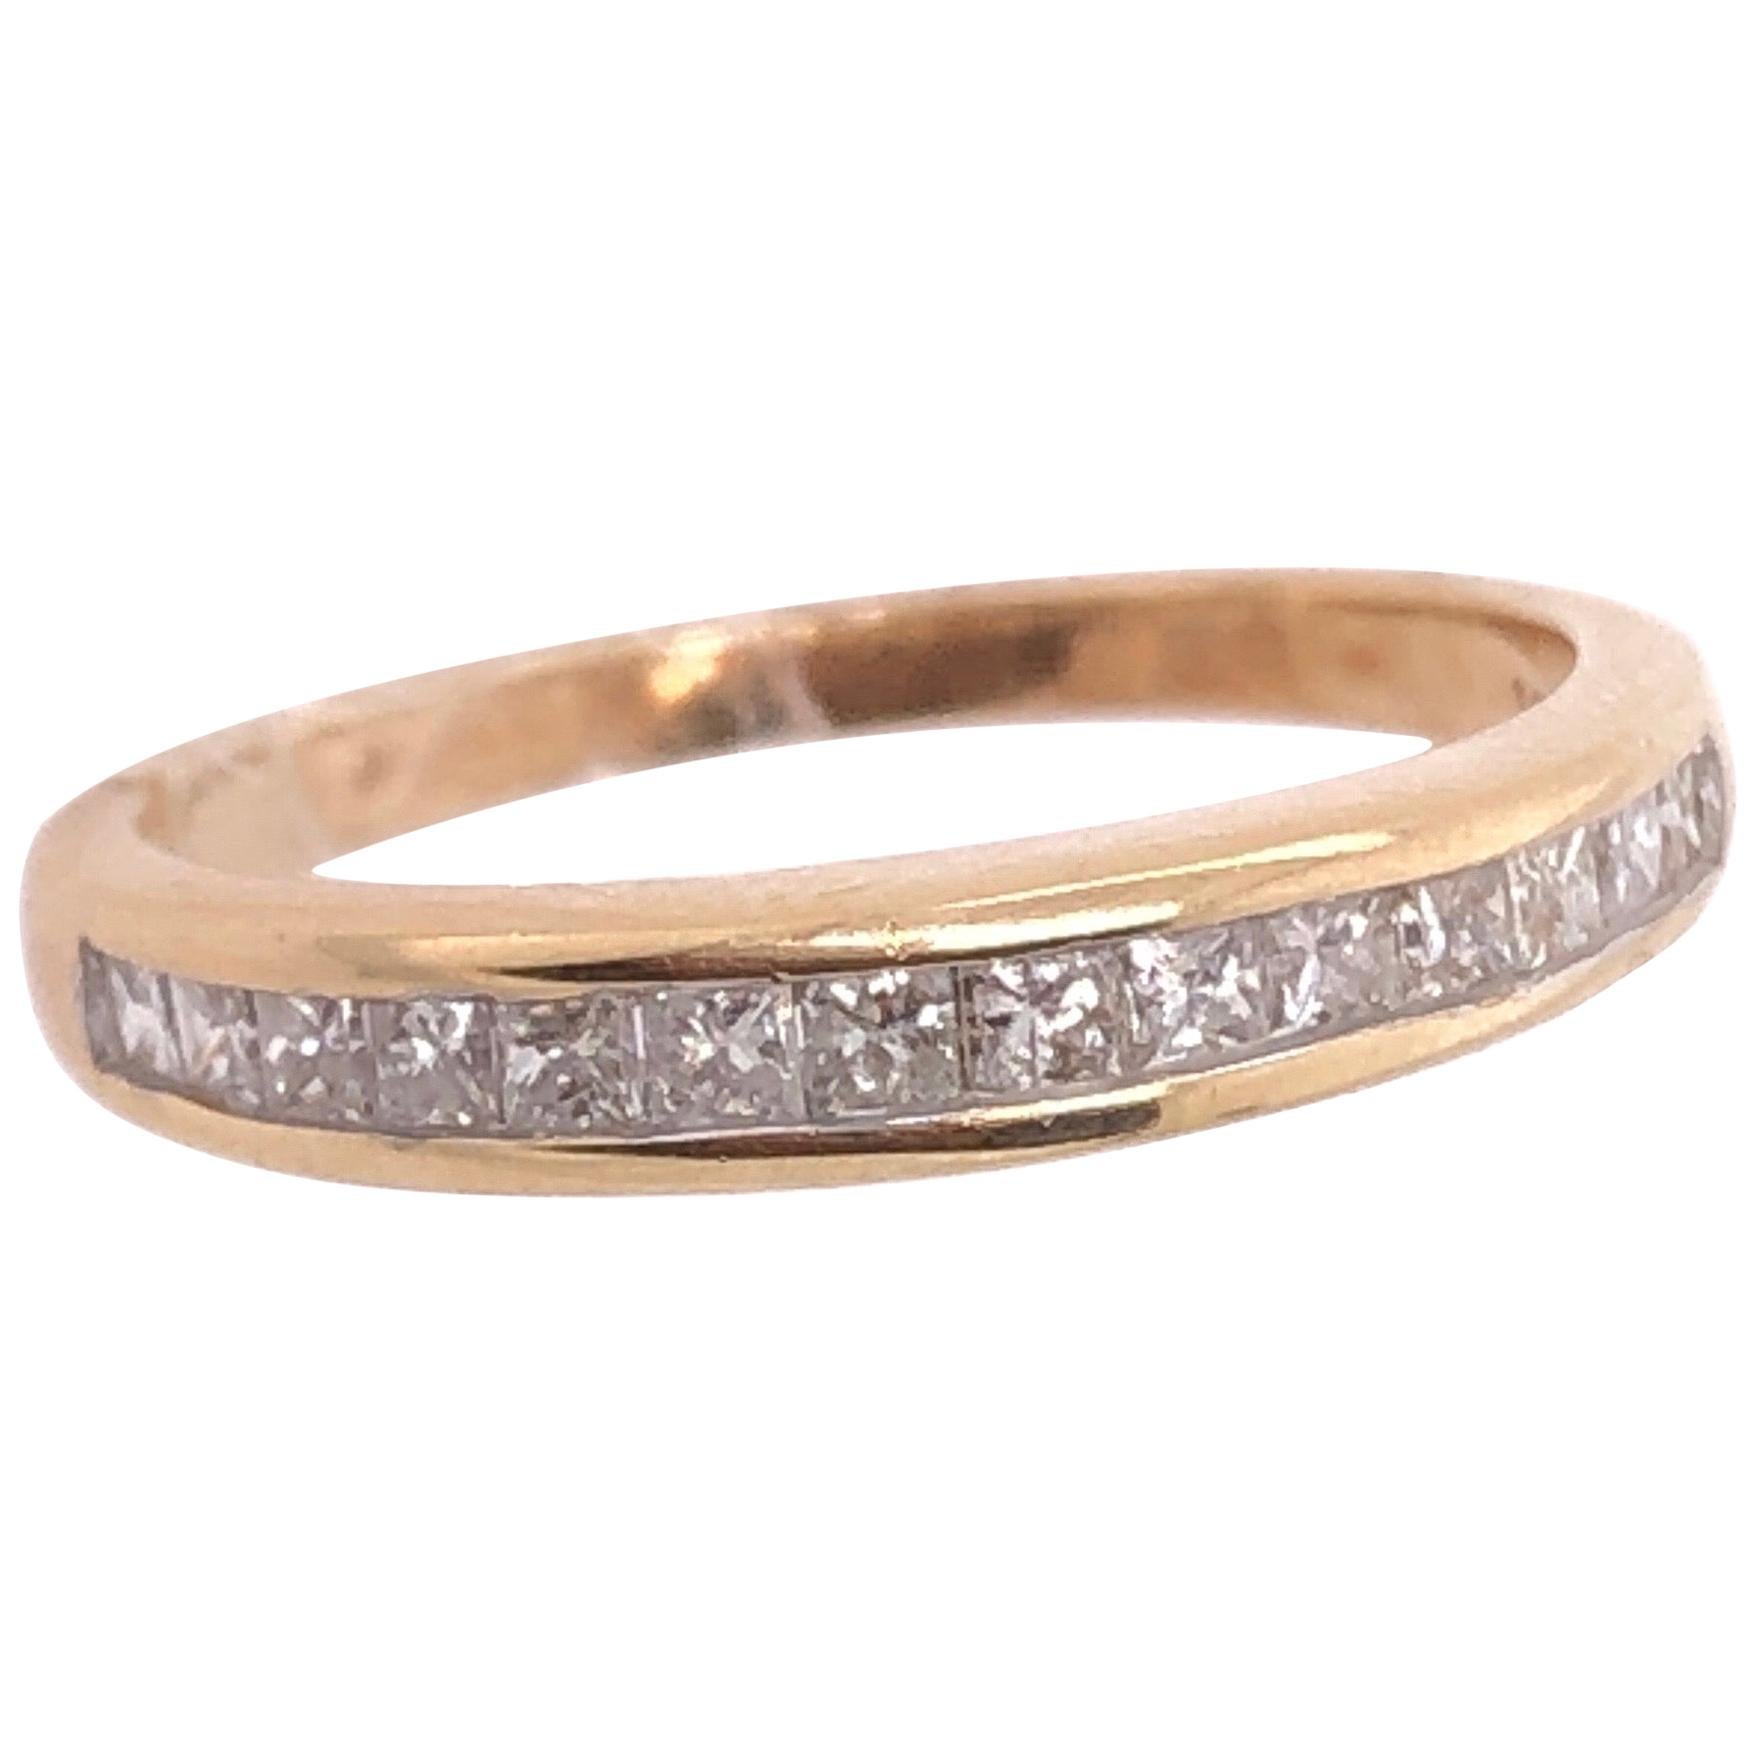 14 Karat Yellow Gold and Diamond Band / Wedding Ring 0.45 TDW